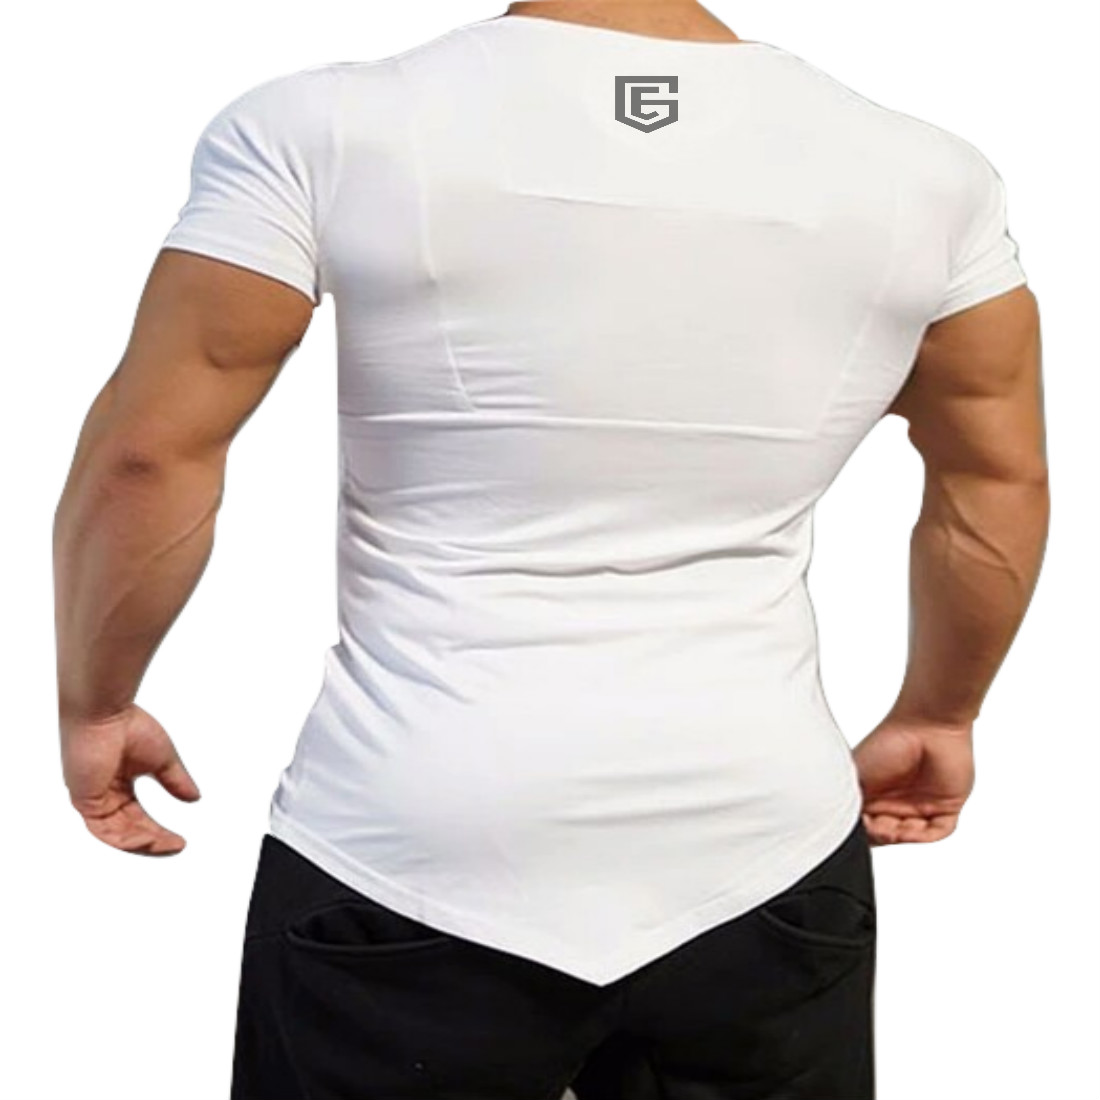 Buy EG White Designer Gym Fit T-Shirt For Men's ( Gym White ) Oniine ...